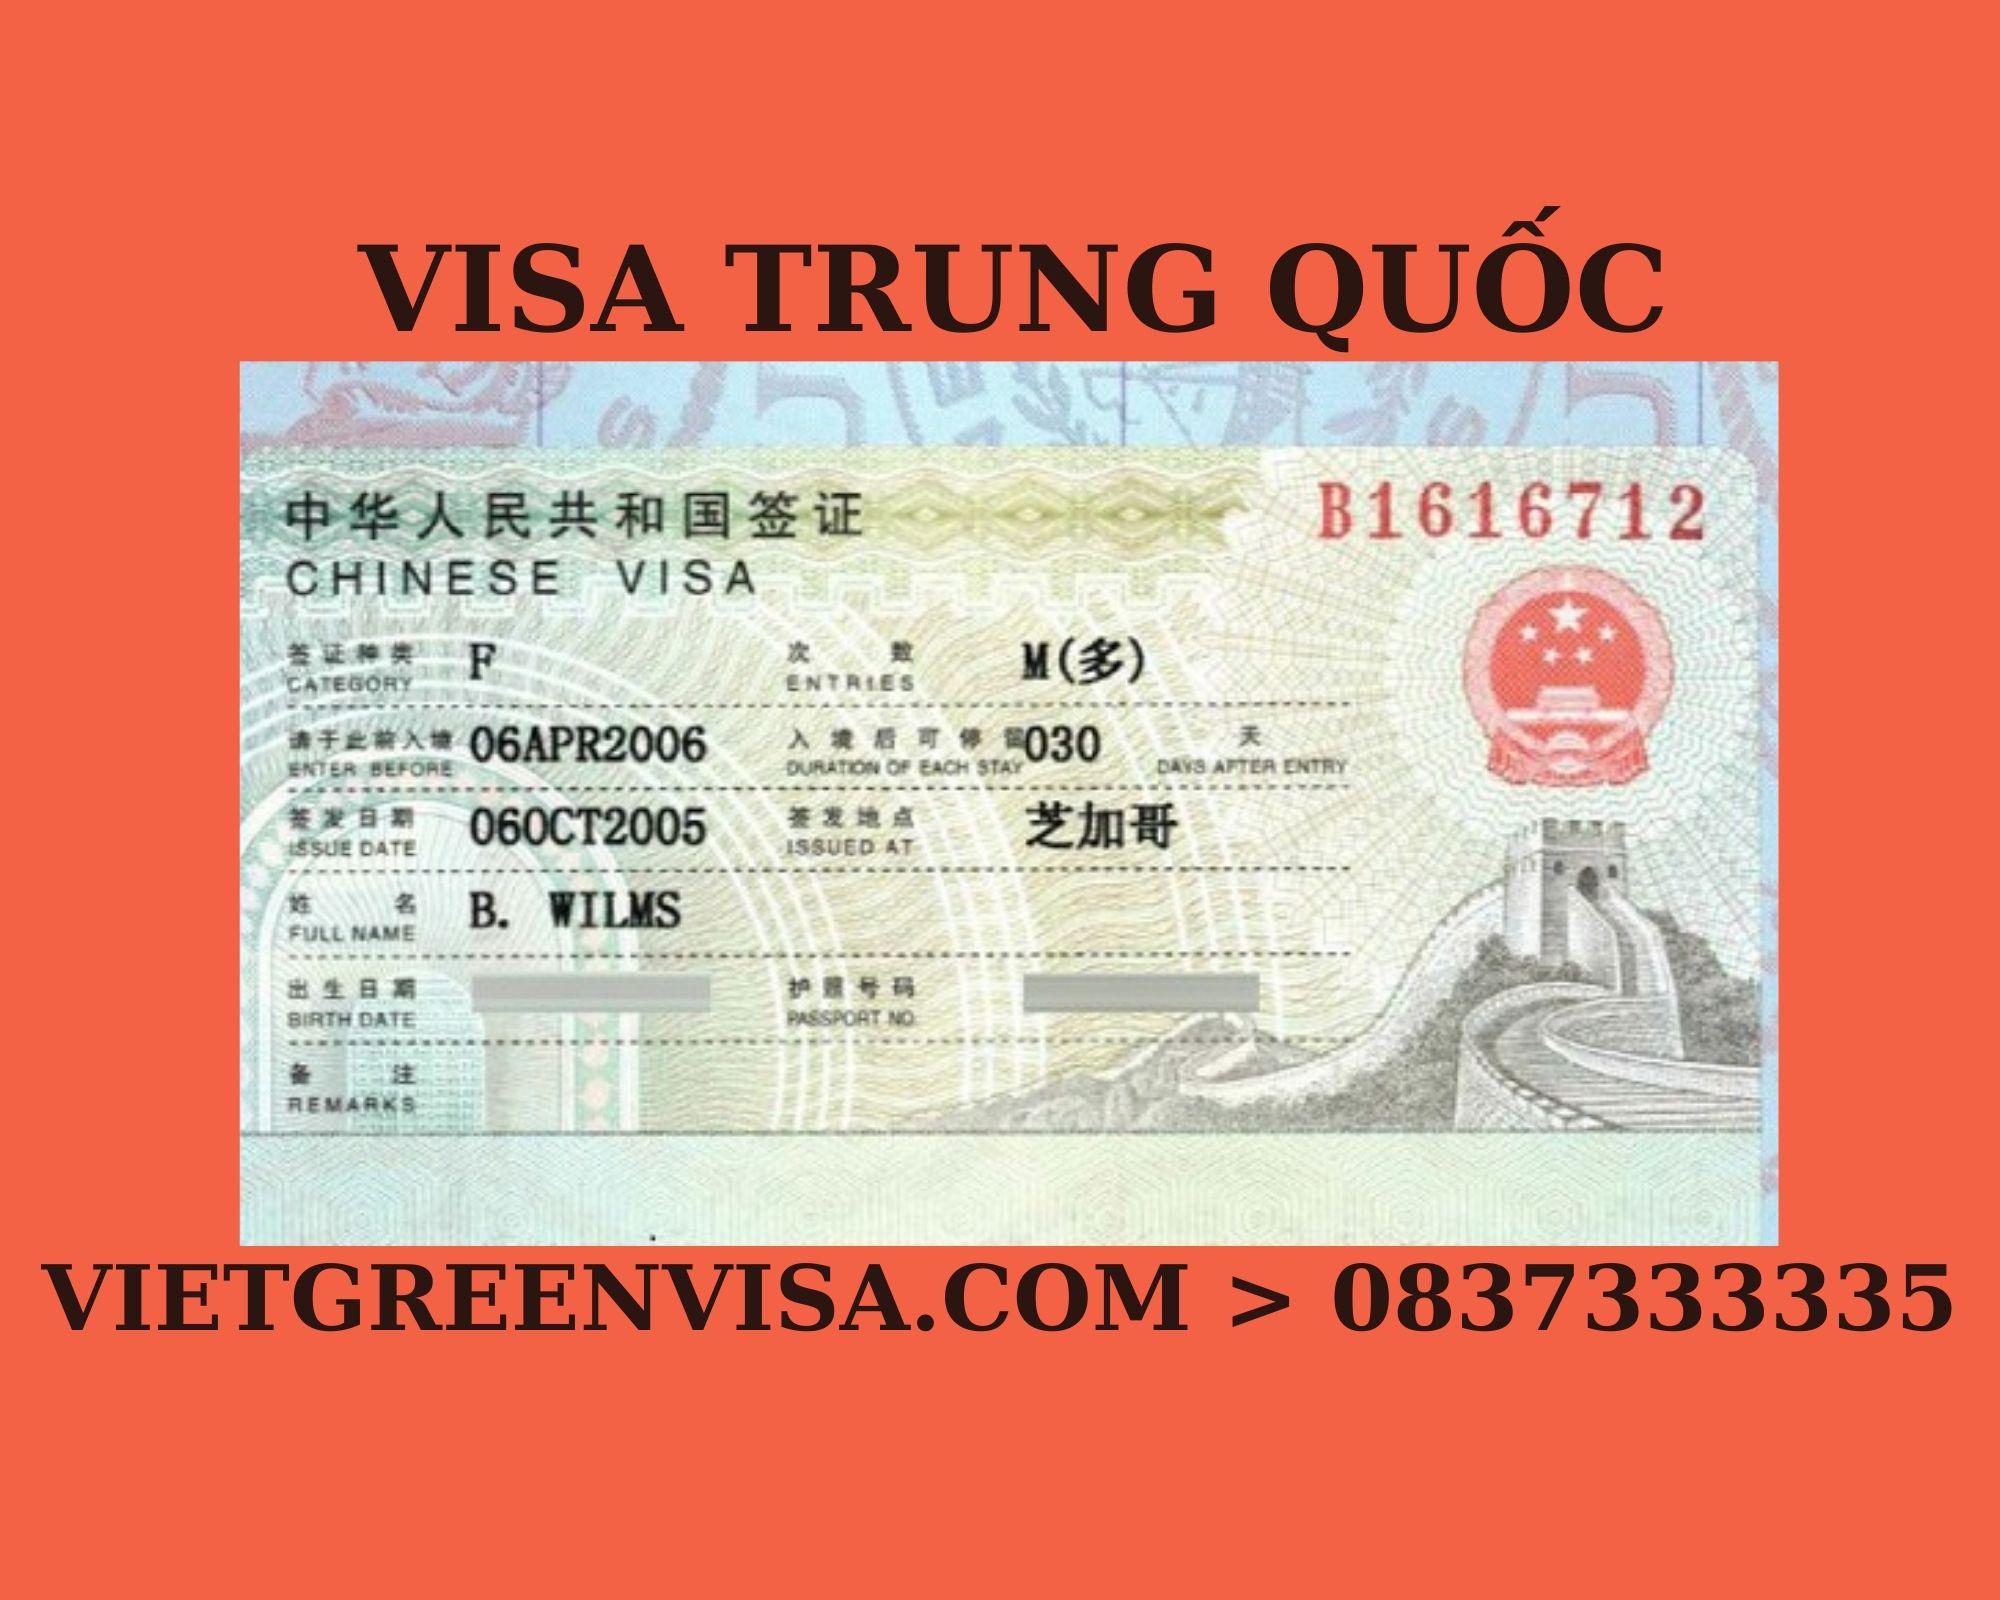 Dịch vụ xin visa Trung Quốc thăm thân nhân. Viet Green visa